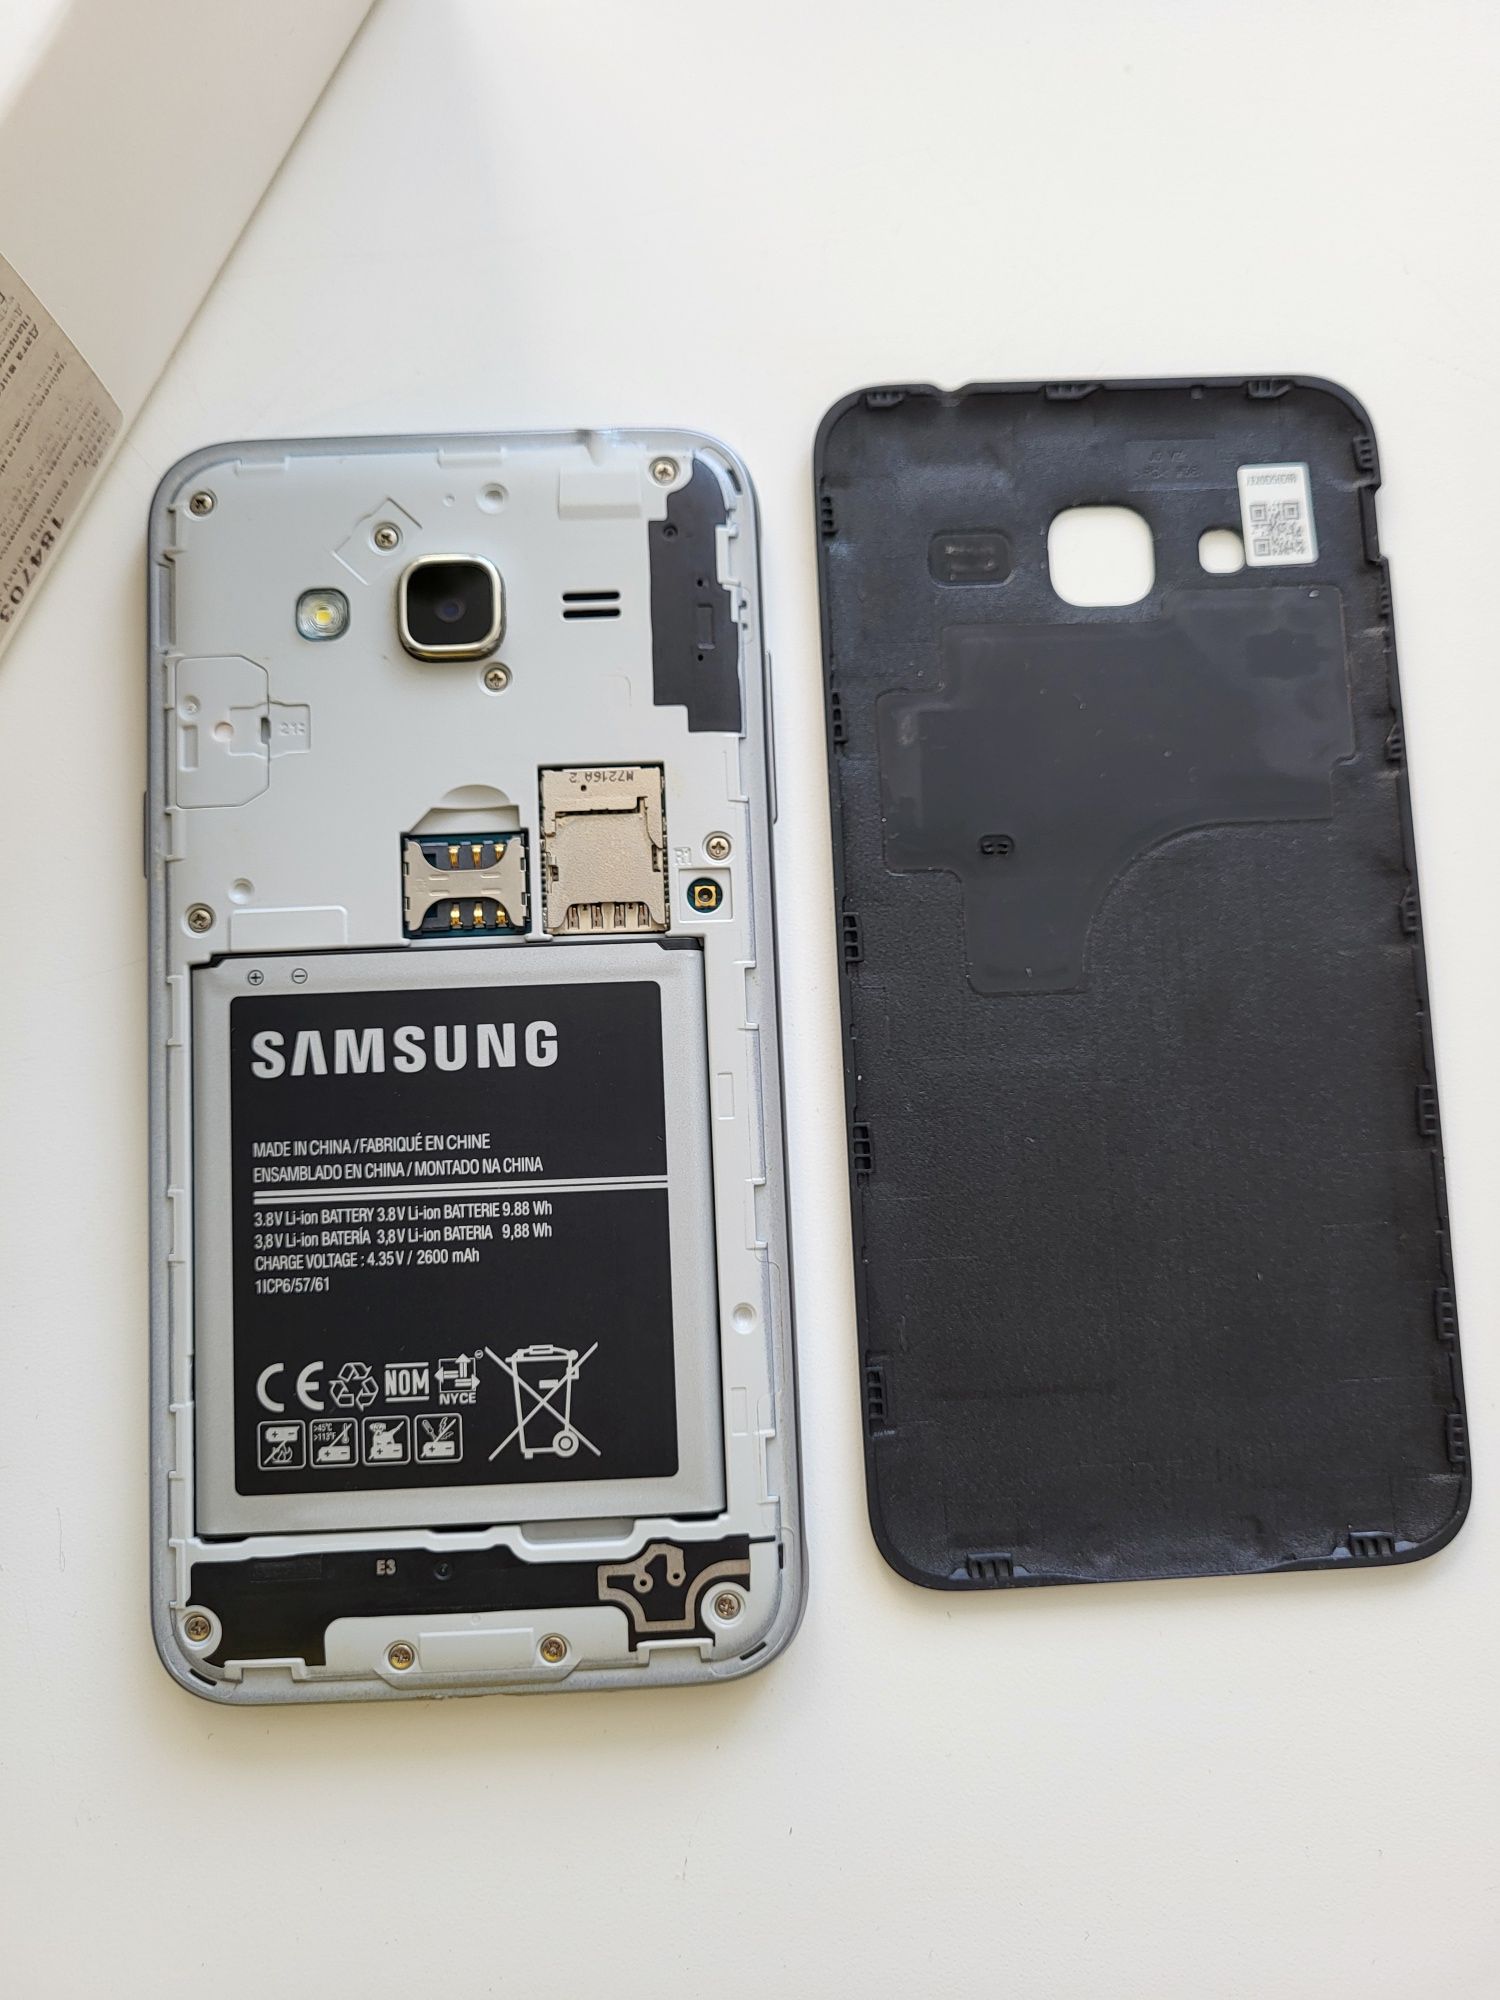 Samsung Galaxy J3 black мини Джек съёмная батарея